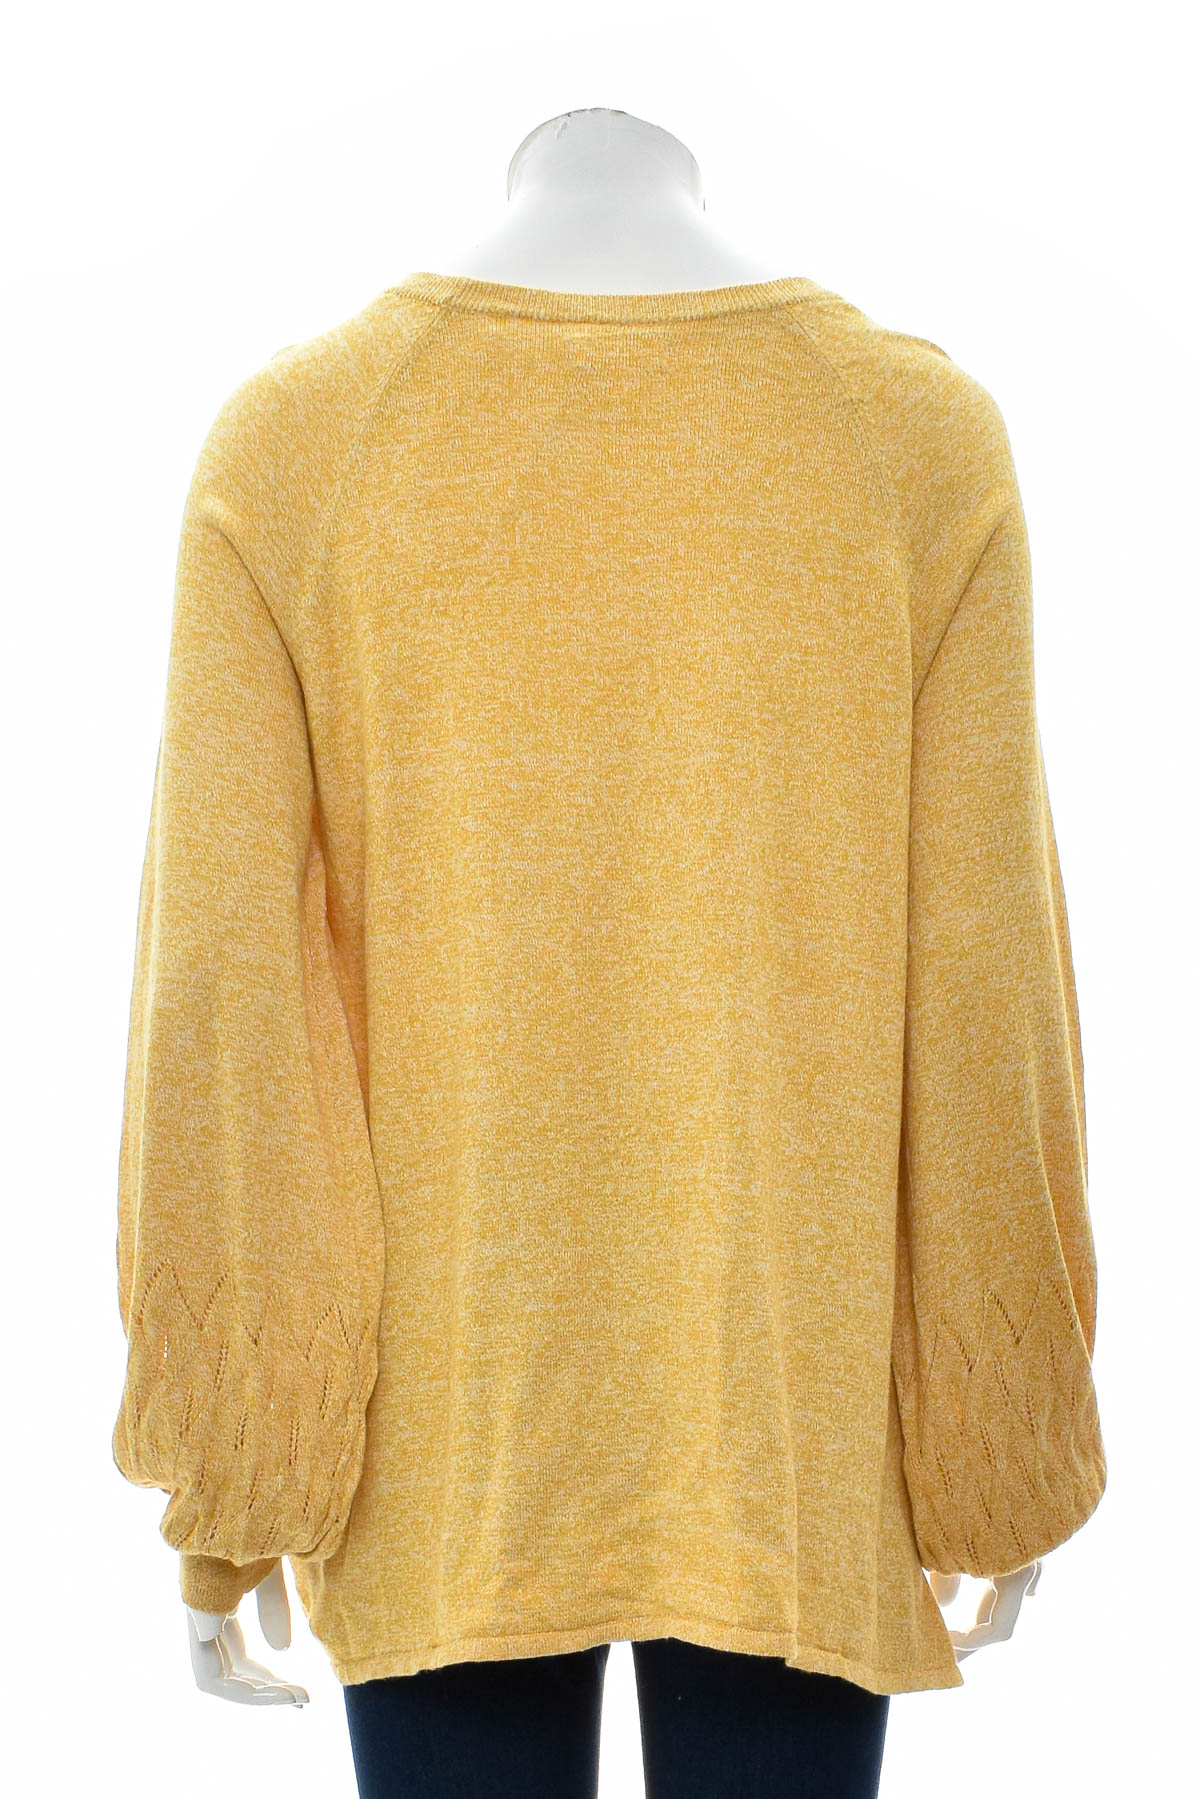 Women's sweater - LC LAUREN CONRAD - 1